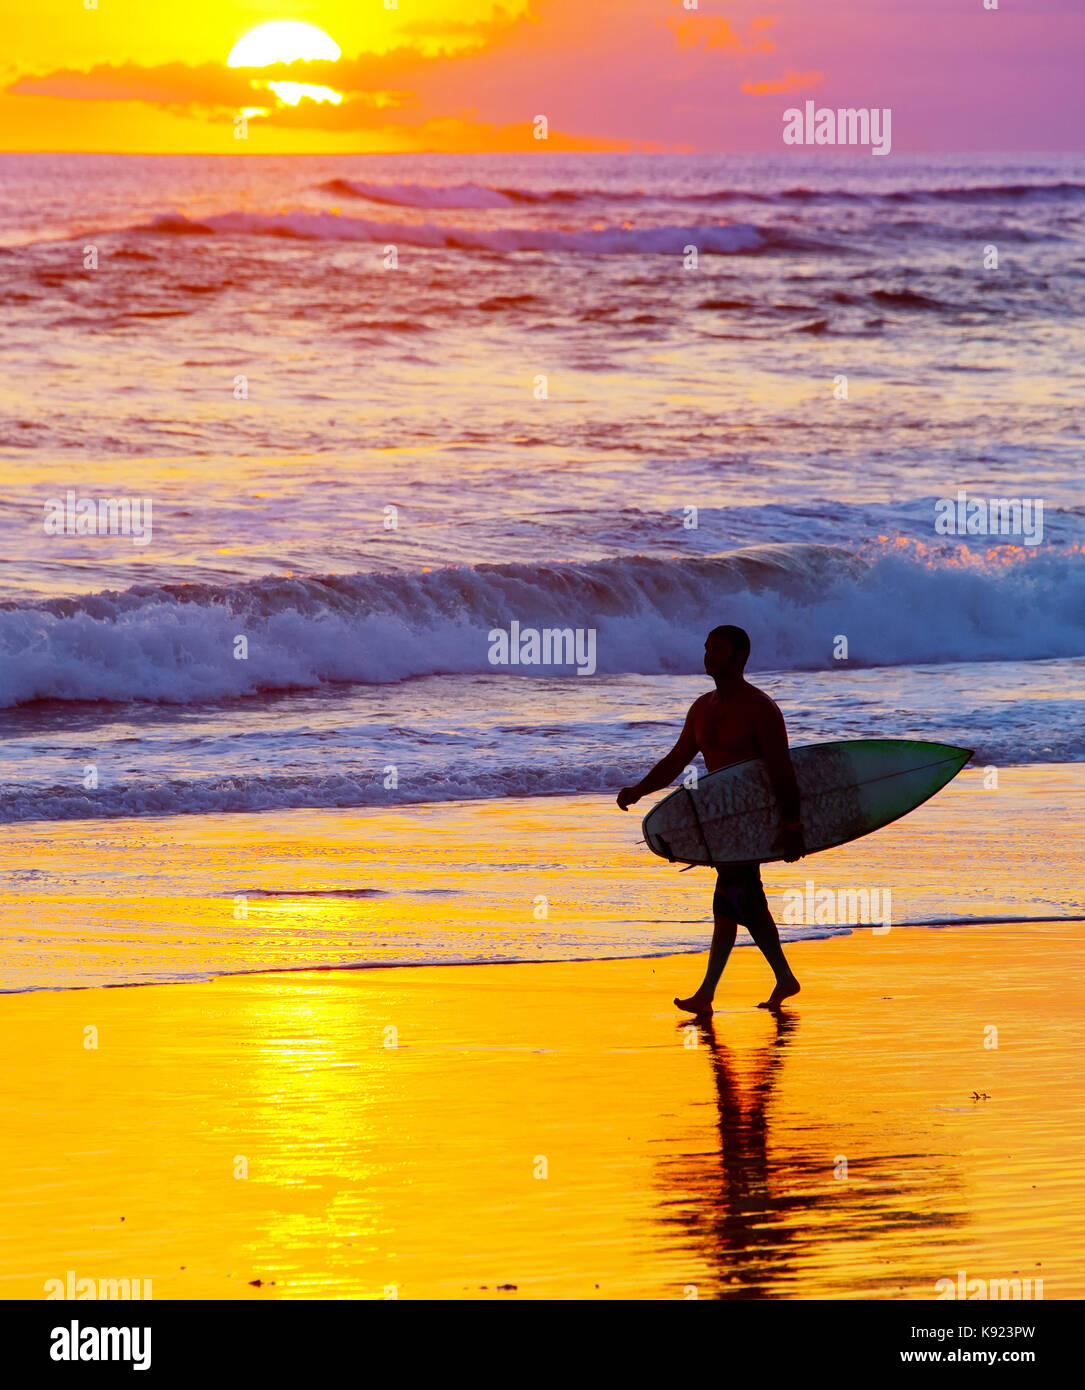 Surfer mit Surfbrett zu Fuß am Strand bei Sonnenuntergang. die Insel Bali, Indonesien Stockfoto